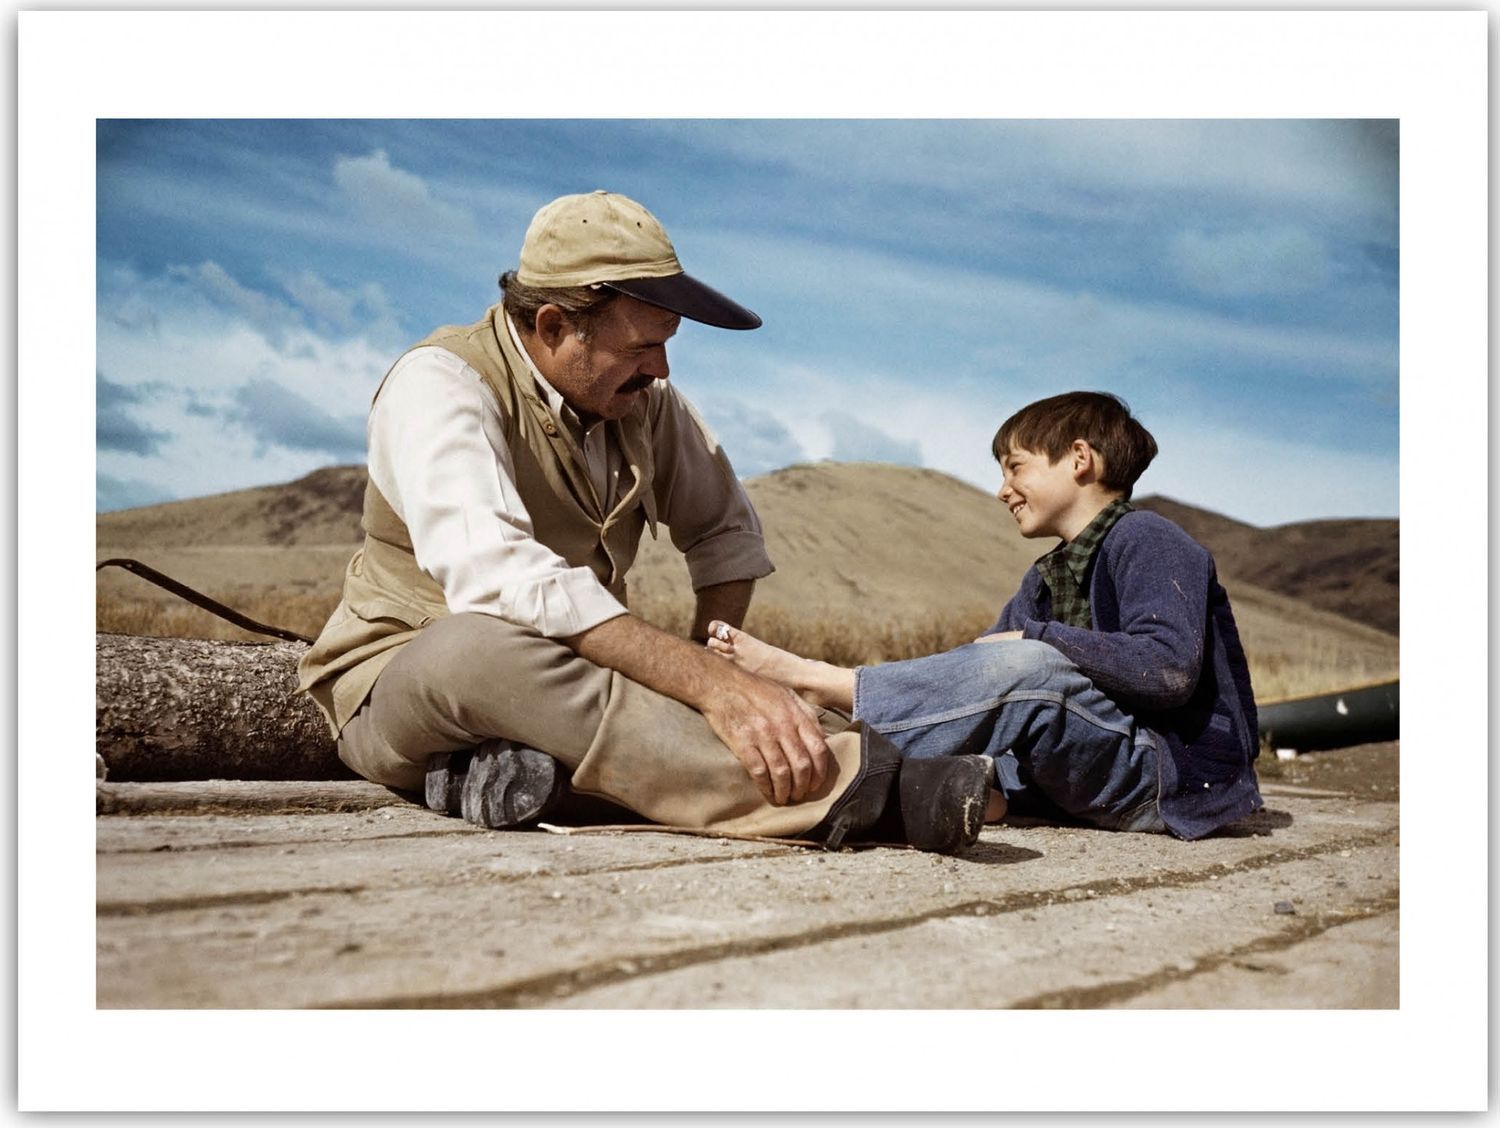 Robert Capa Robert CAPA
Ernest Hemingway avec son fils à Sun Valley, USA, 1941

&hellip;